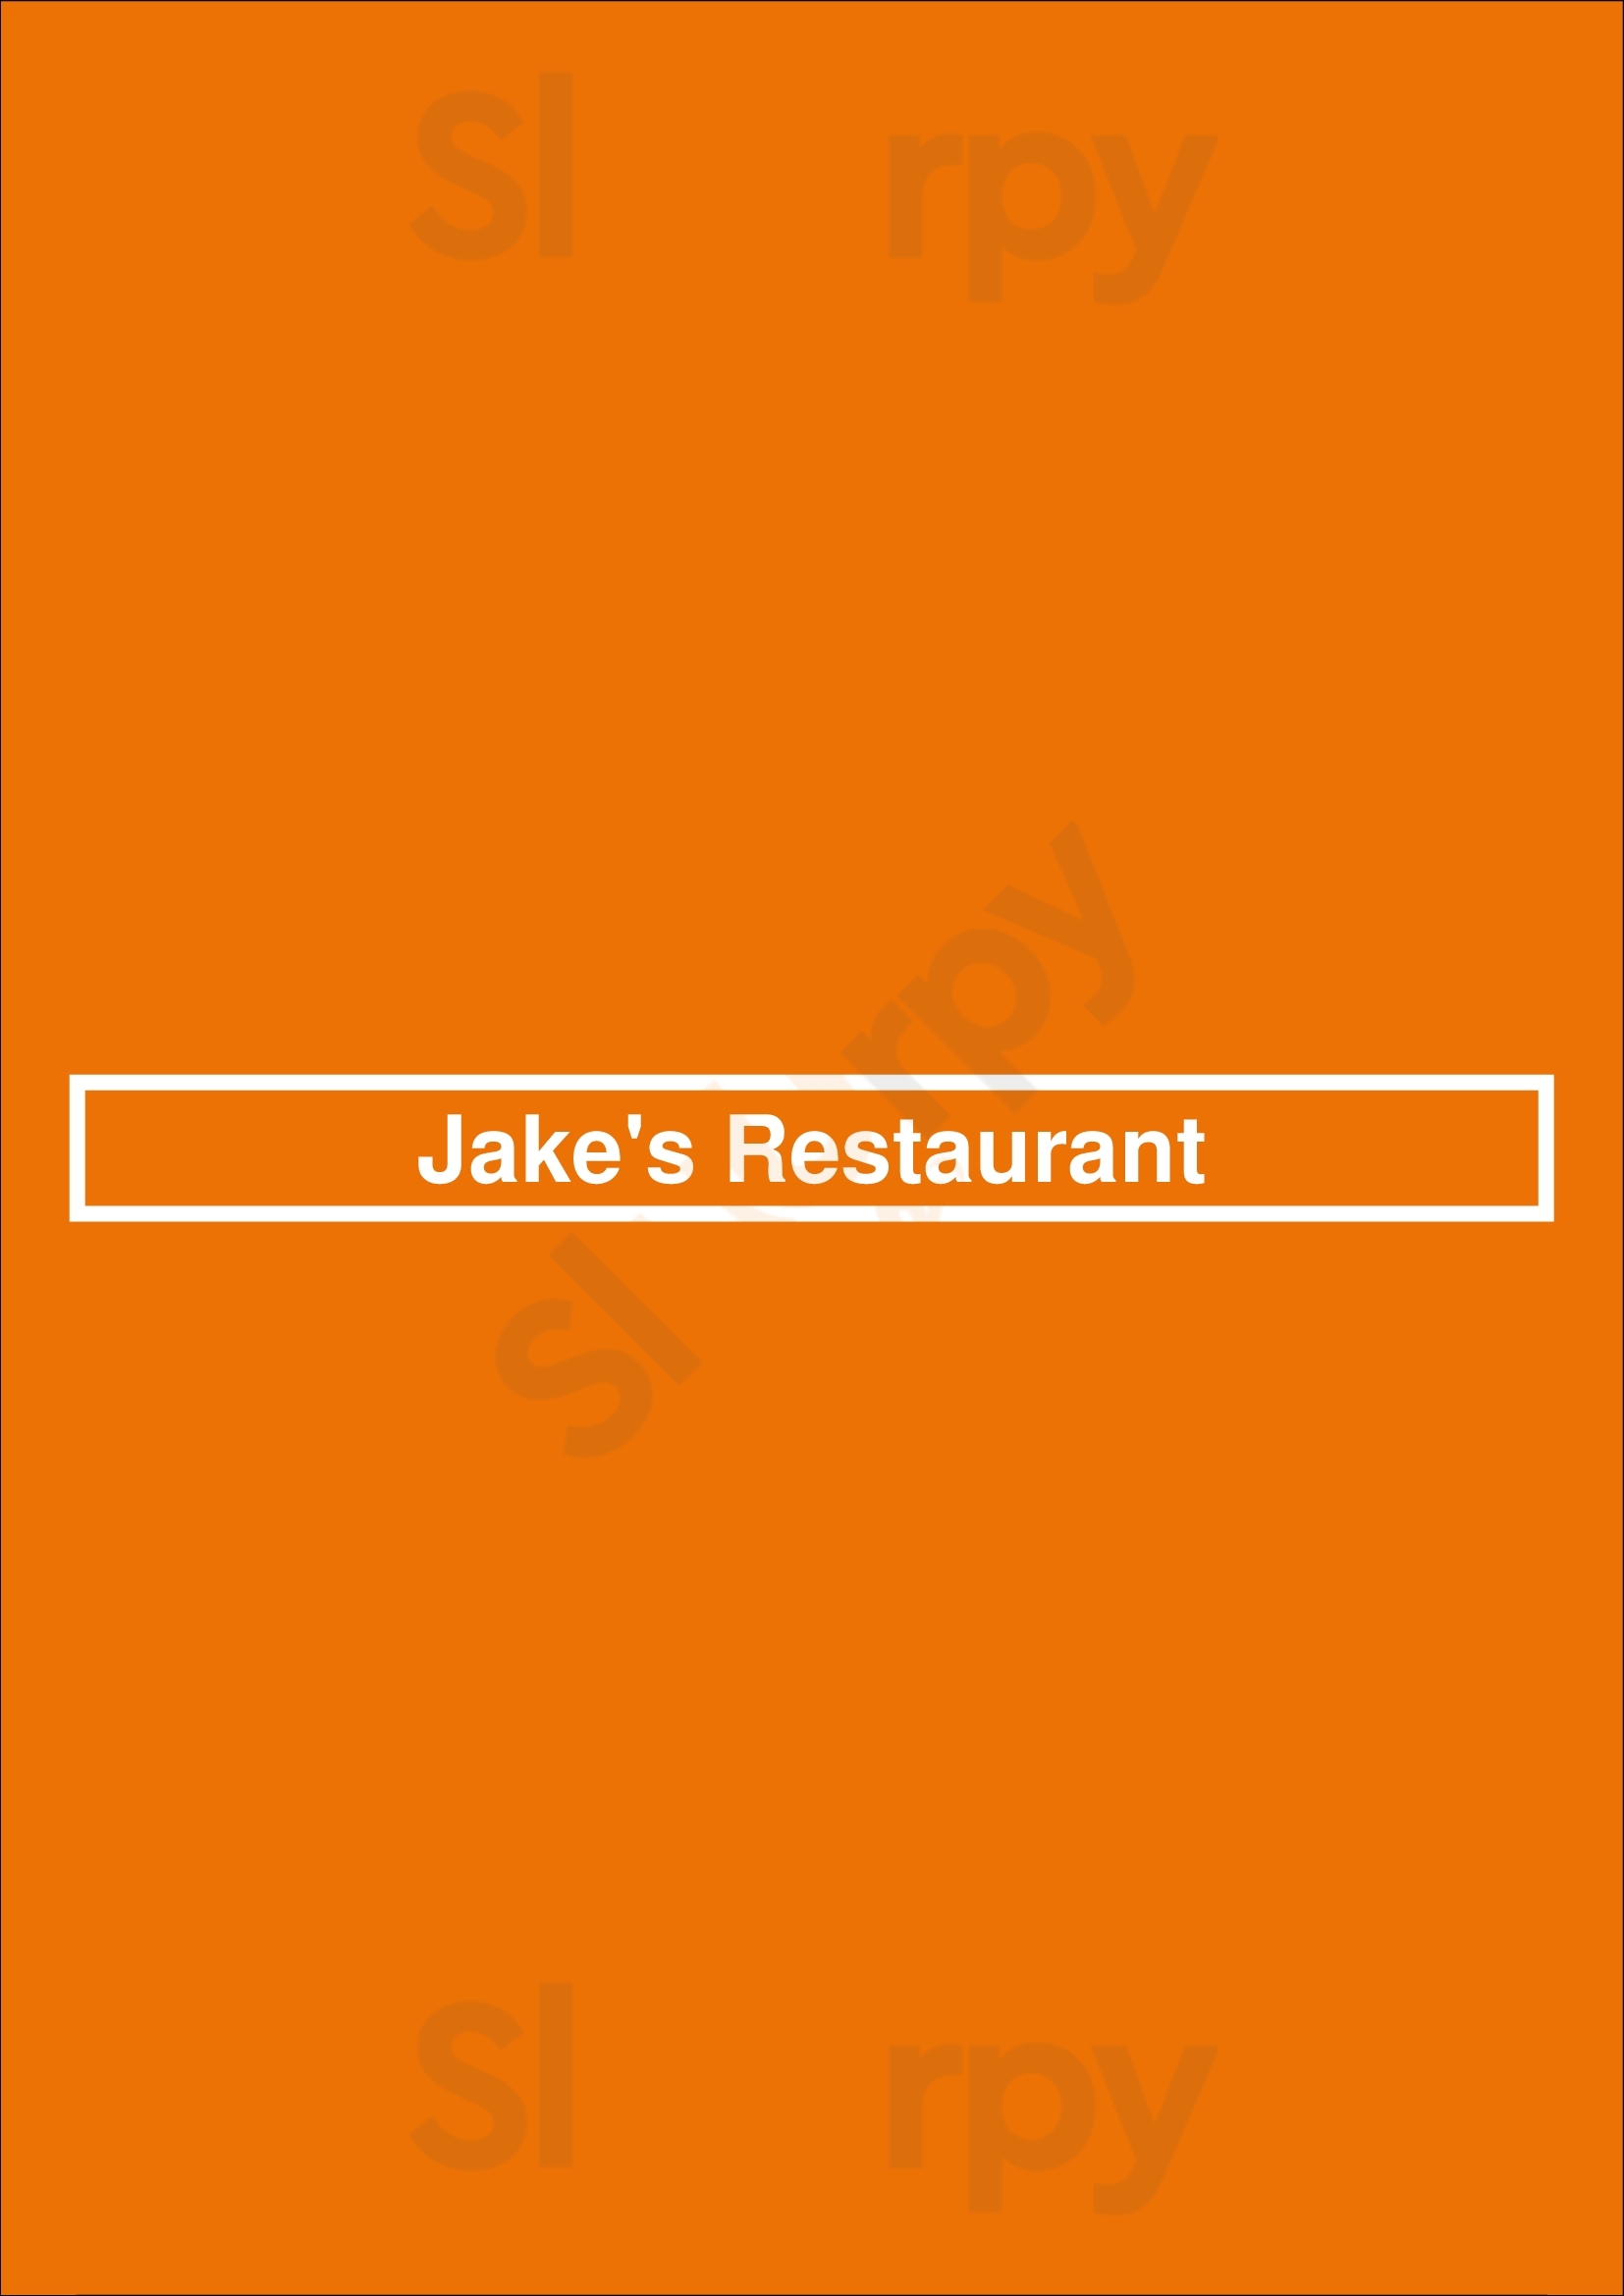 Jake's Restaurant Pewaukee Menu - 1